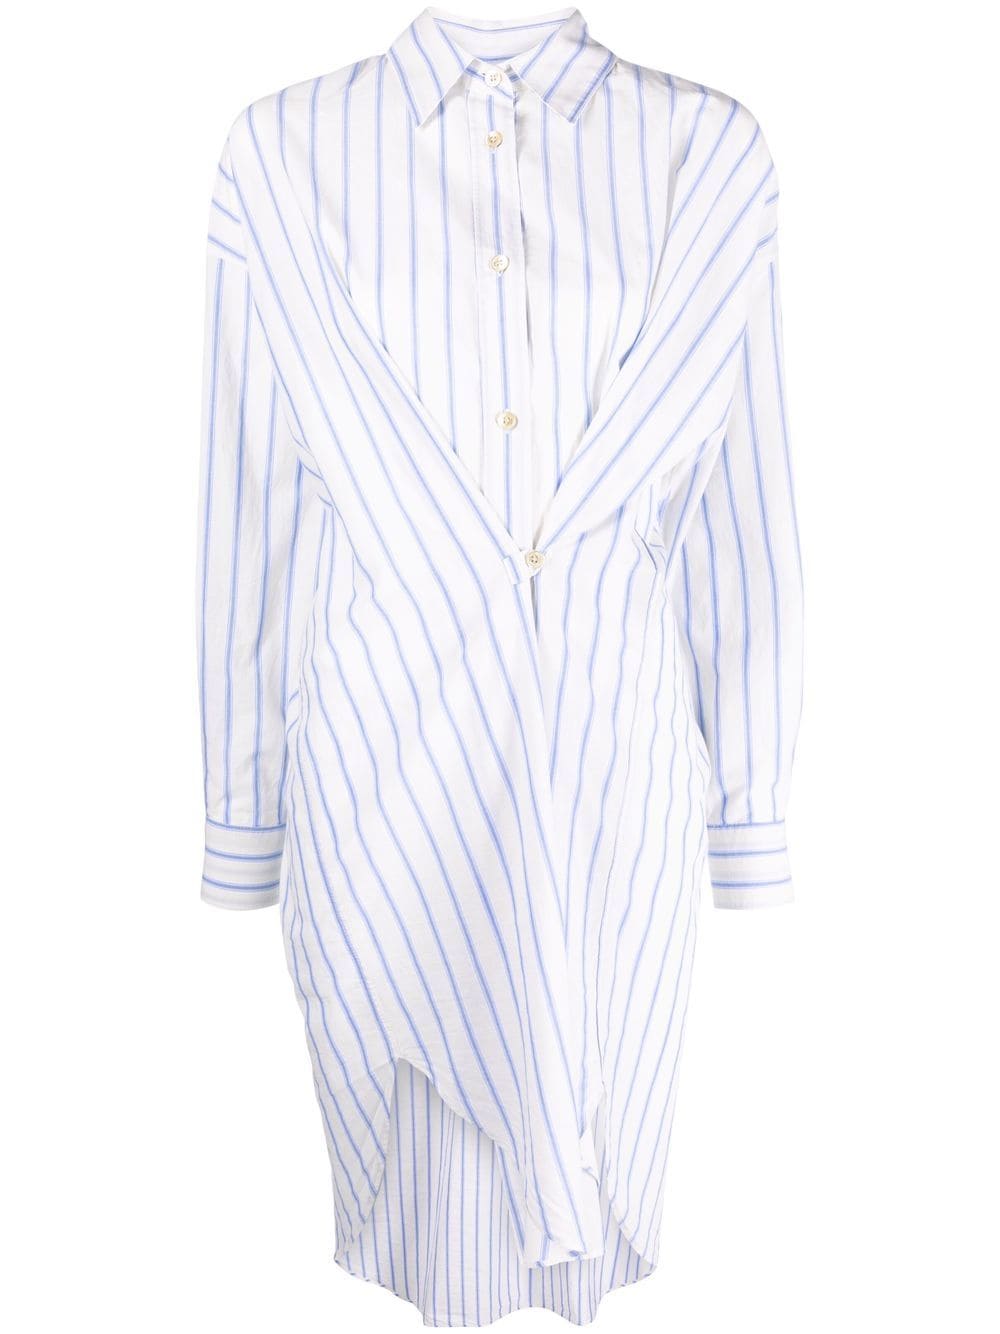 MARANT ÉTOILE asymmetric striped shirt dress - Neutrals von MARANT ÉTOILE